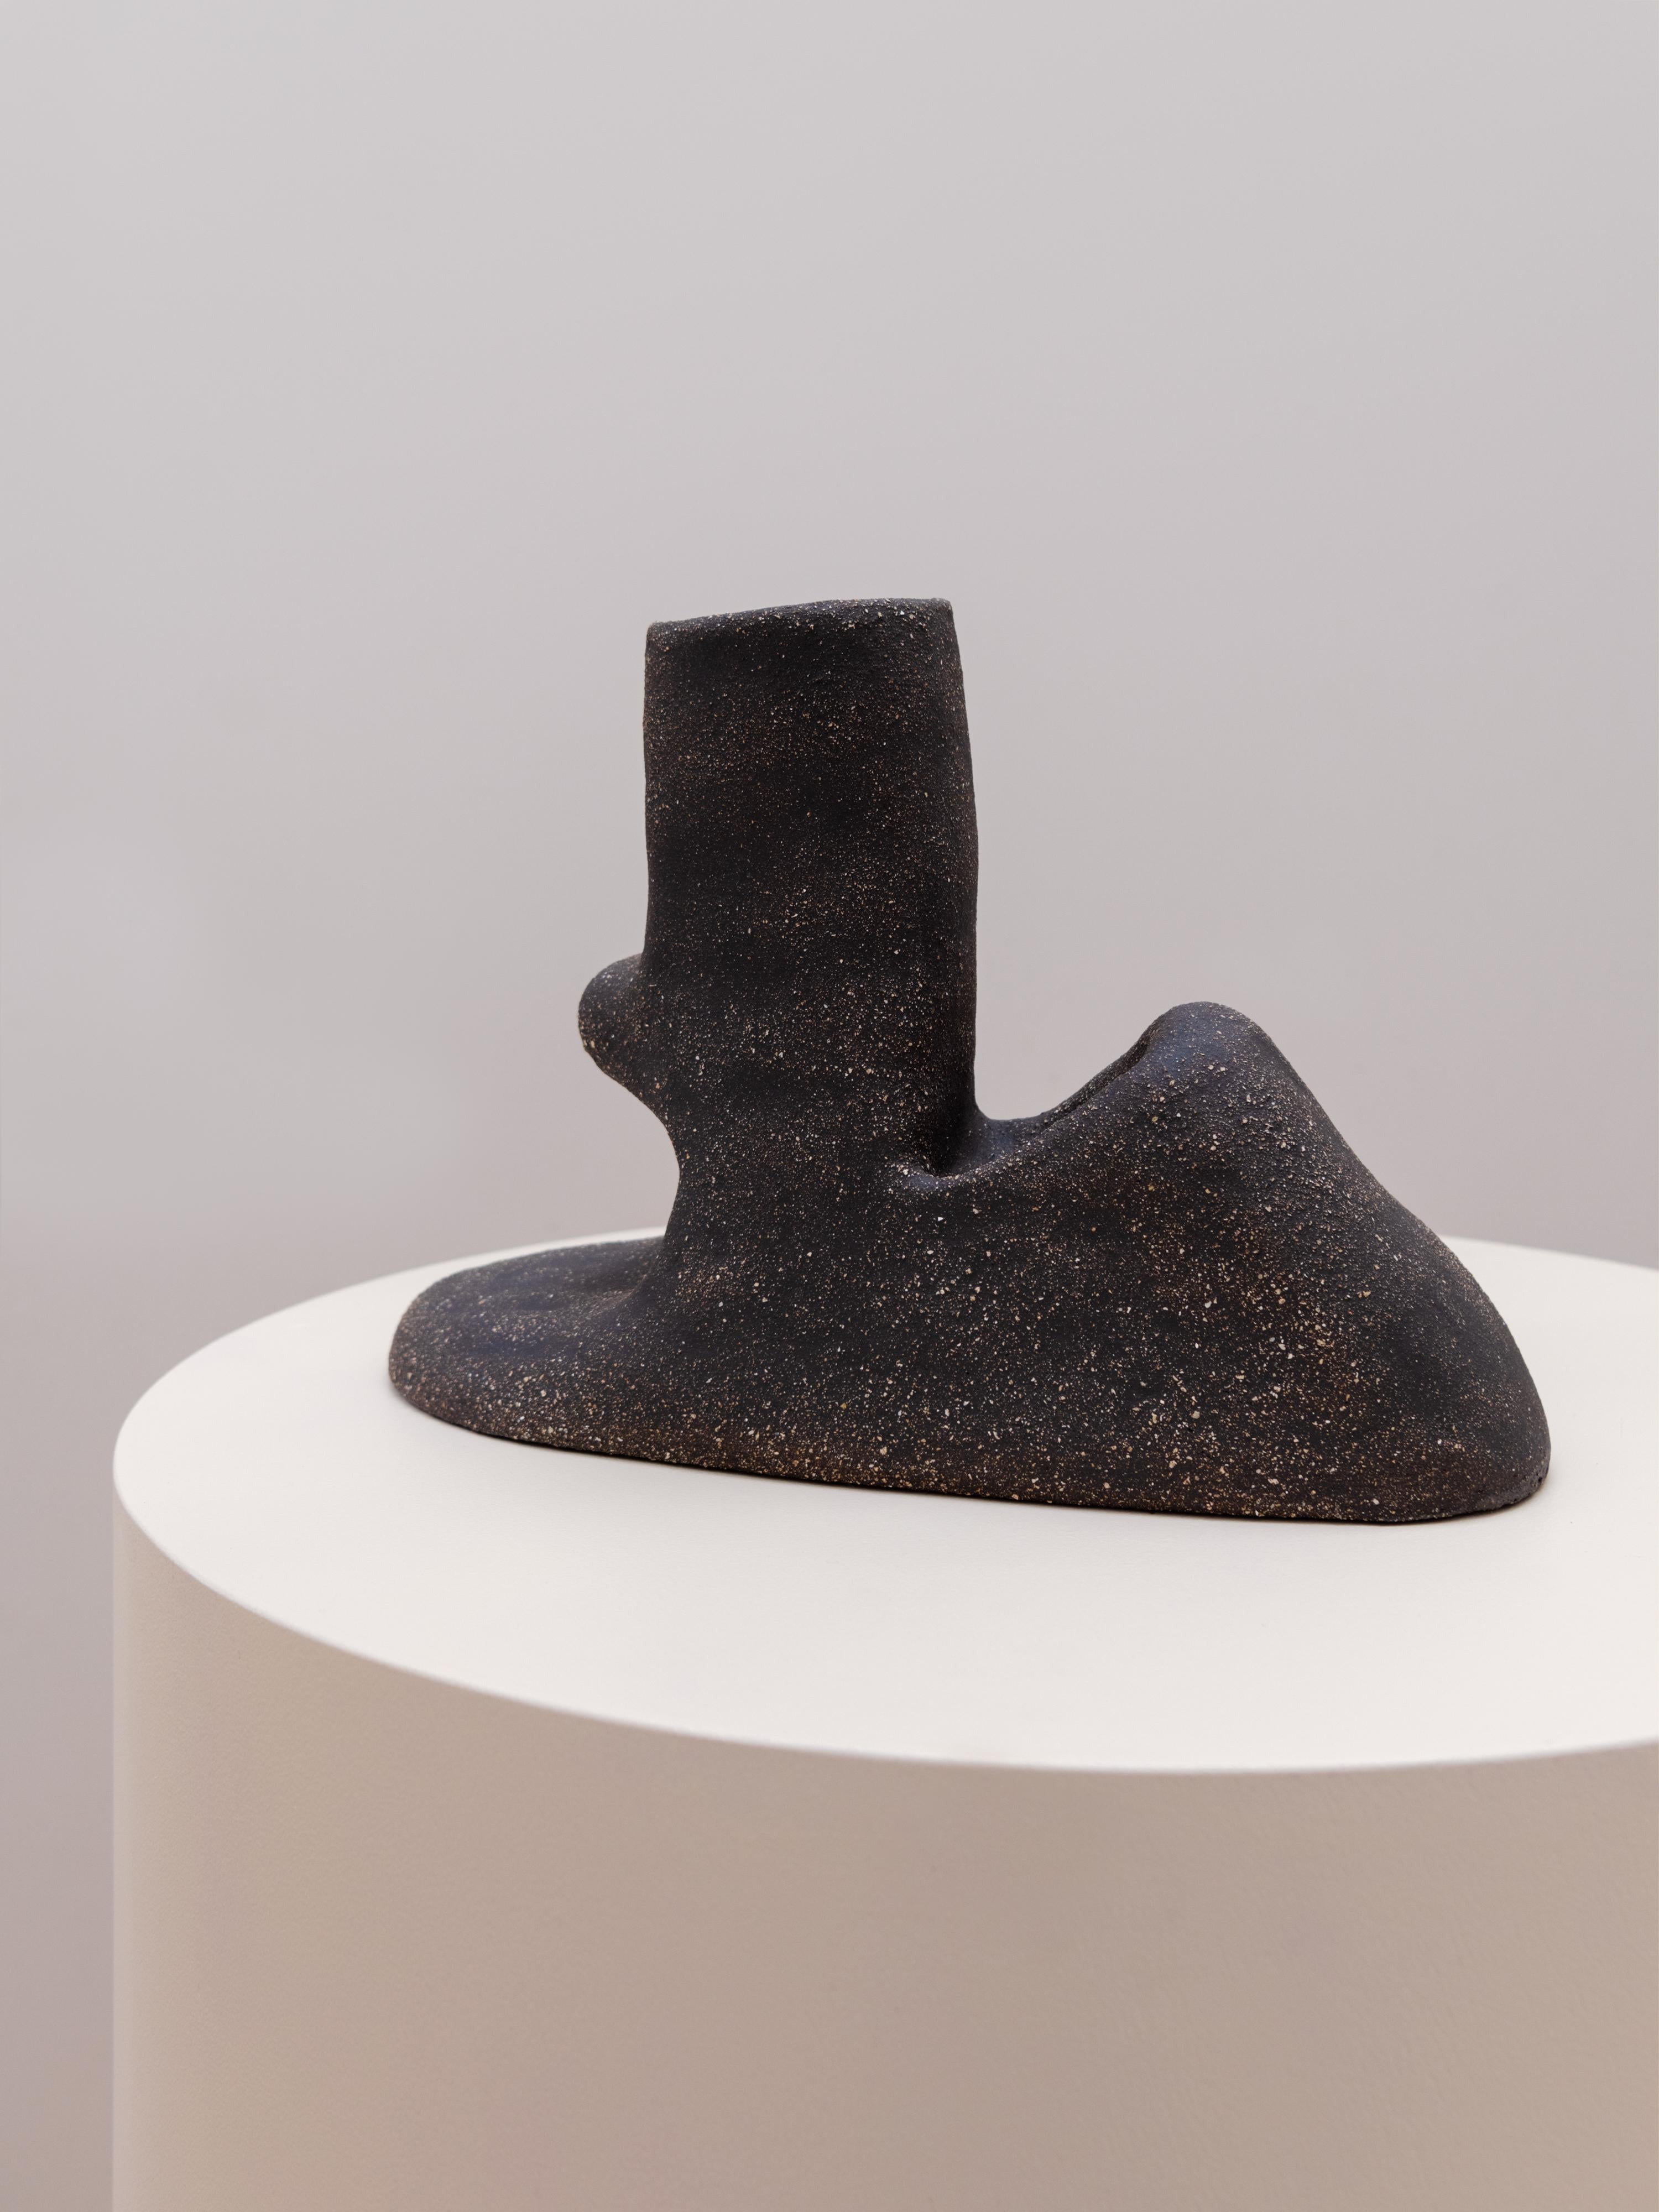 Volcan II-Vase von Sophie Parachey
Abmessungen: B 37 x T 27 x H 9,5 cm
MATERIALIEN: Schwarzes strukturiertes Steingut.

Inspiriert durch längere Aufenthalte in Mittelamerika hinterfragt Sophie Parachey in ihren Arbeiten die Transformation, den